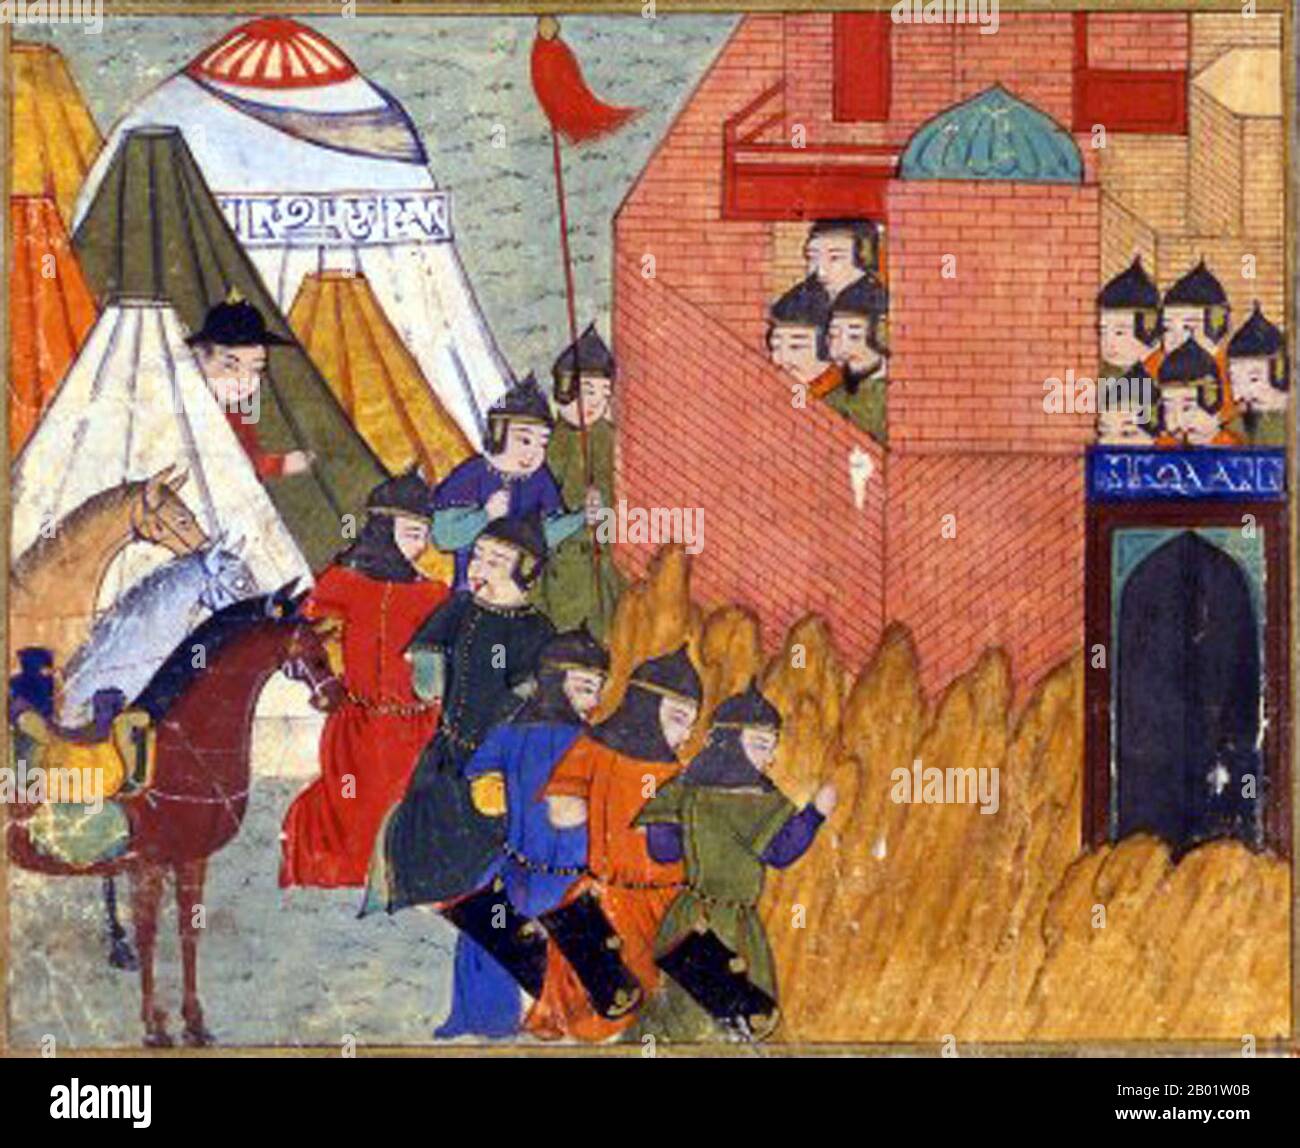 Iran/Persia/Mongolia: L'assedio di Erbil (1258-1259). Pittura in miniatura da Rashid al-DIN (1247-1318) Jami al-Tawarikh, c. 1305. Il Jāmiʿ al-tawārīkh ("Compendium of Chronicles") o storia universale è un'opera di letteratura e storia iraniana scritta da Rashid al-DIN Hamadani all'inizio del XIV secolo. Foto Stock